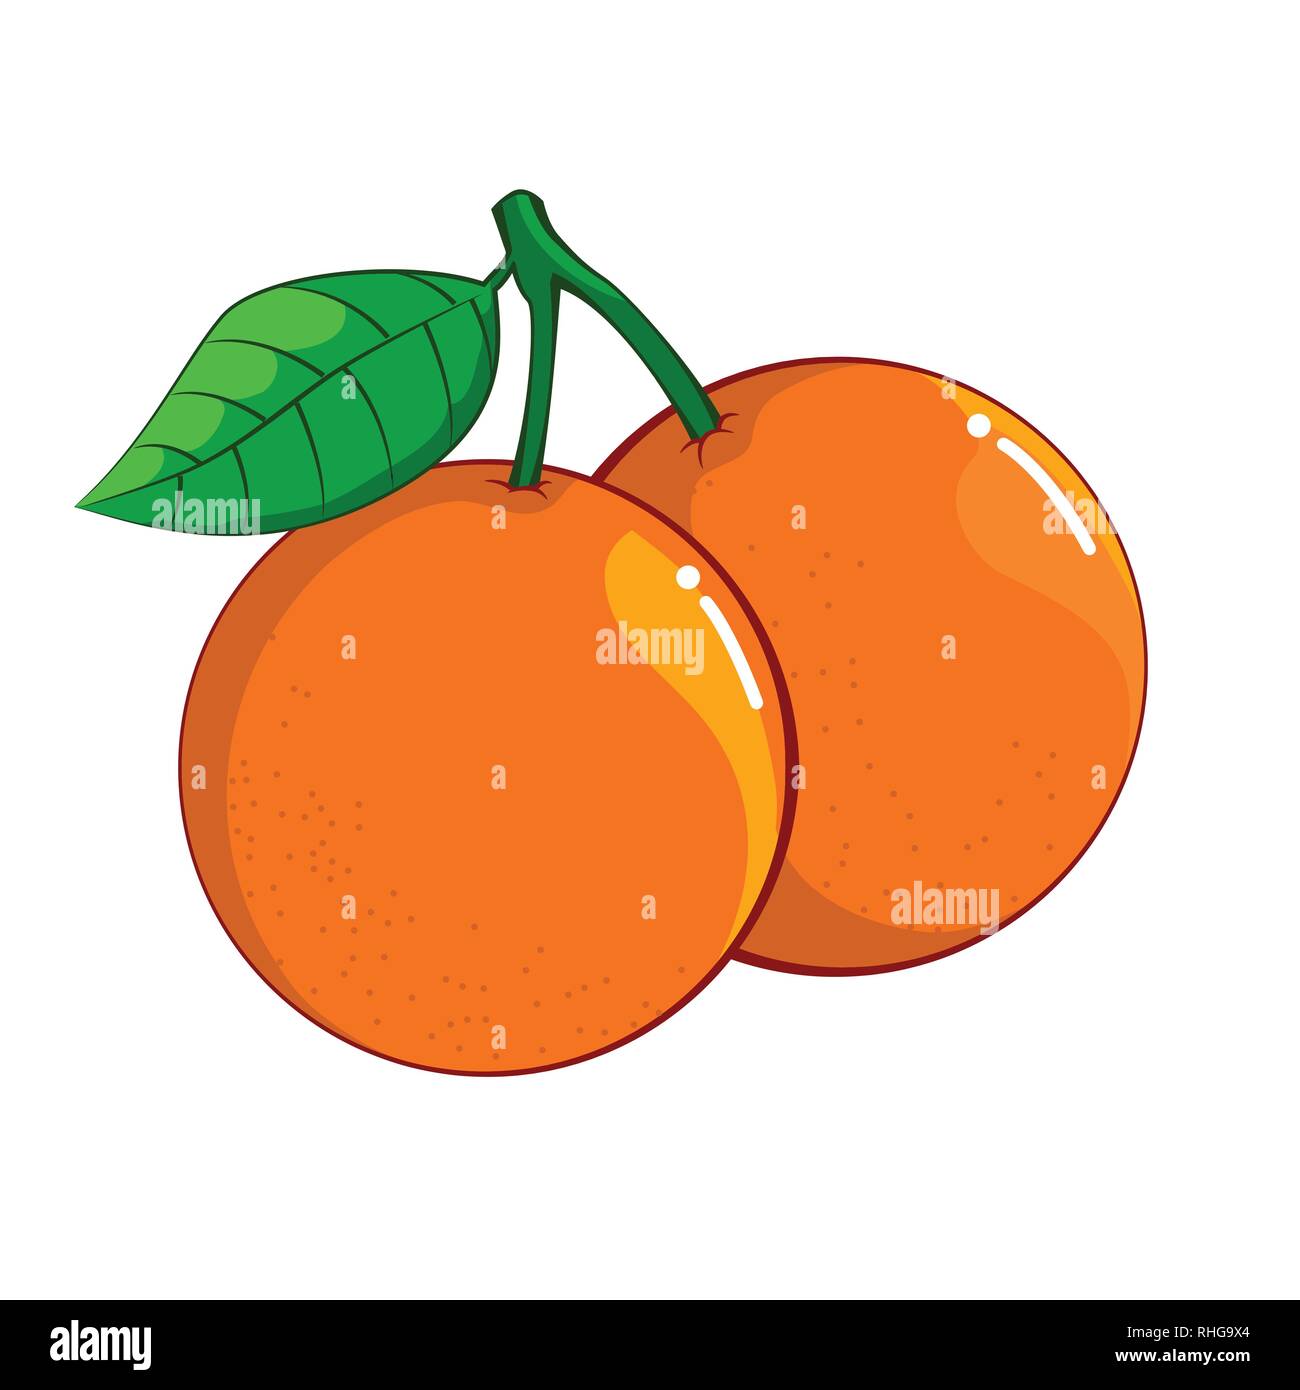 Illustrazione di isolato di colore arancione su sfondo bianco, fresco cibo sano, organica frutta naturale. Illustrazione Vettoriale. Illustrazione Vettoriale